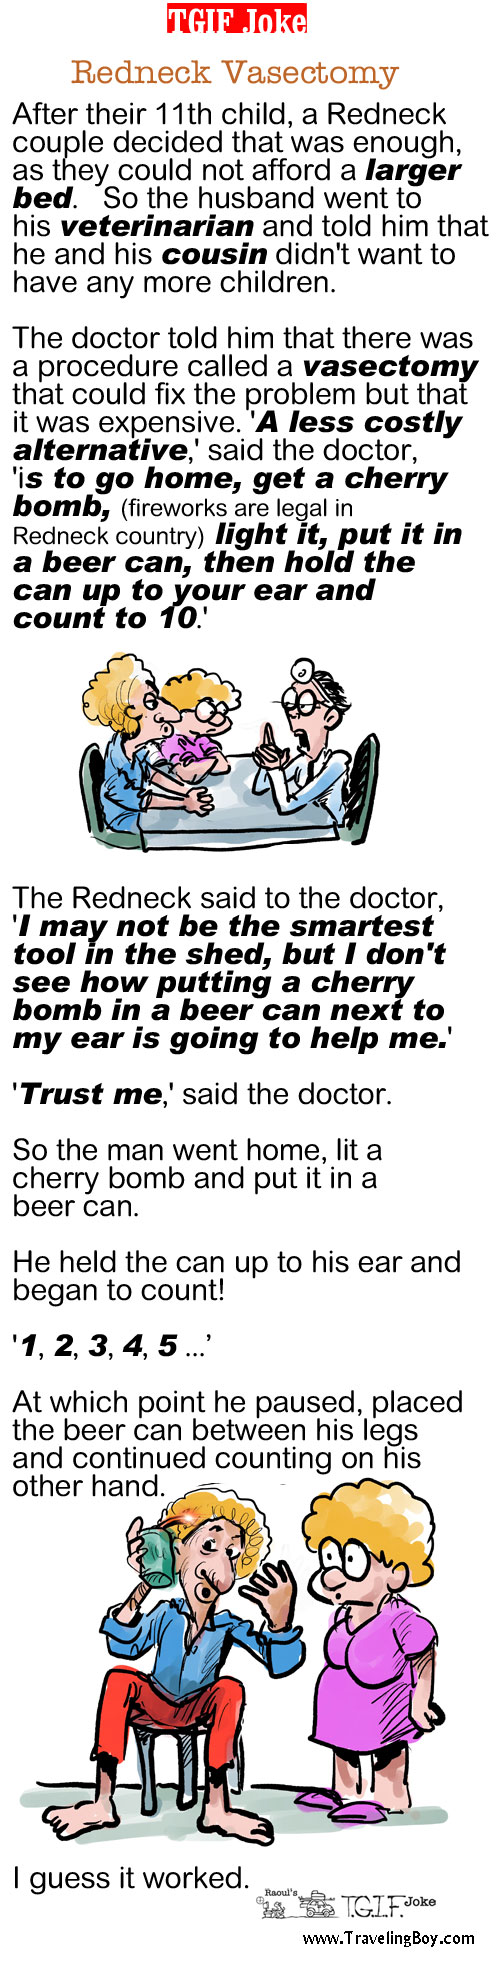 TGIF Joke of the Week: Redneck Vasectomy